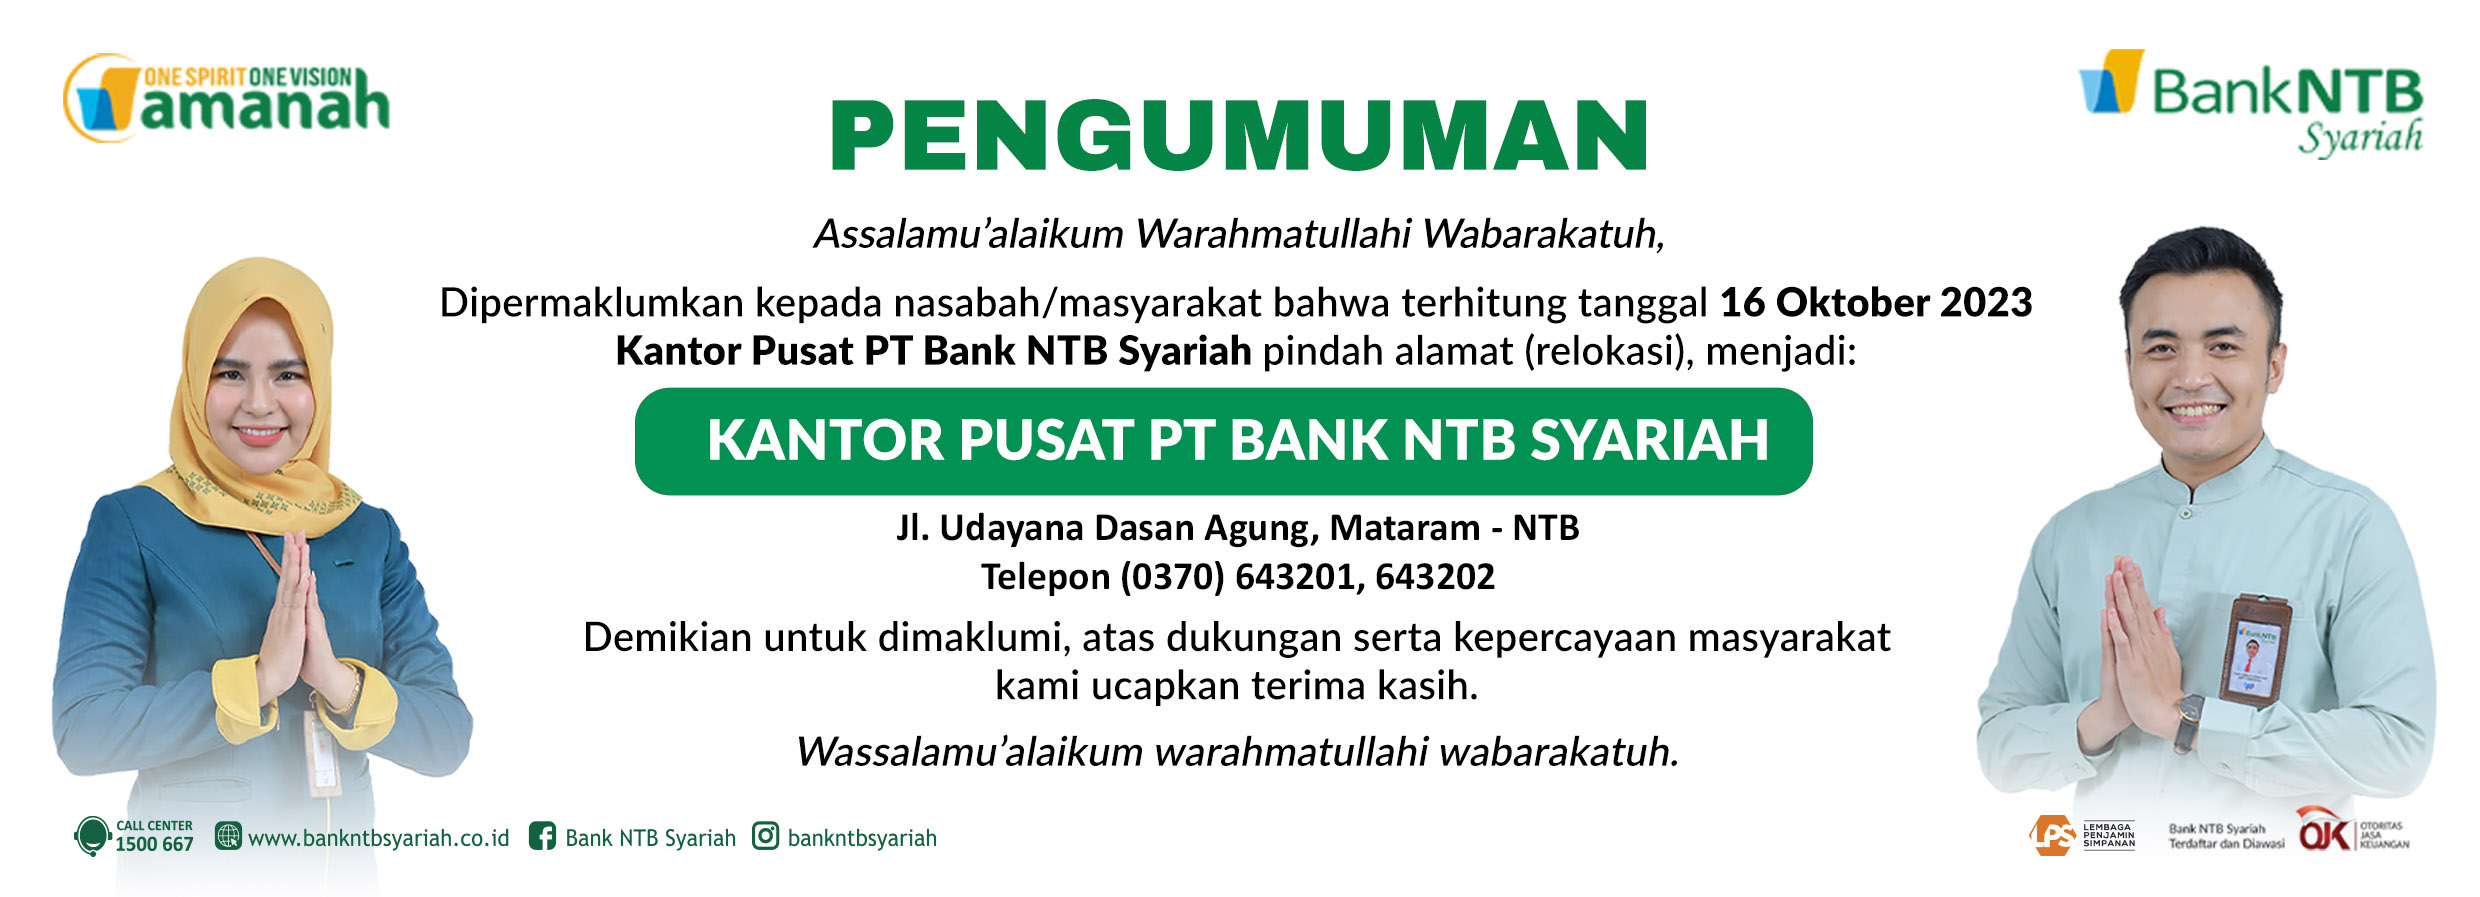 Relokasi-Kantor-Pusat-Bank-NTB-Syariah.html